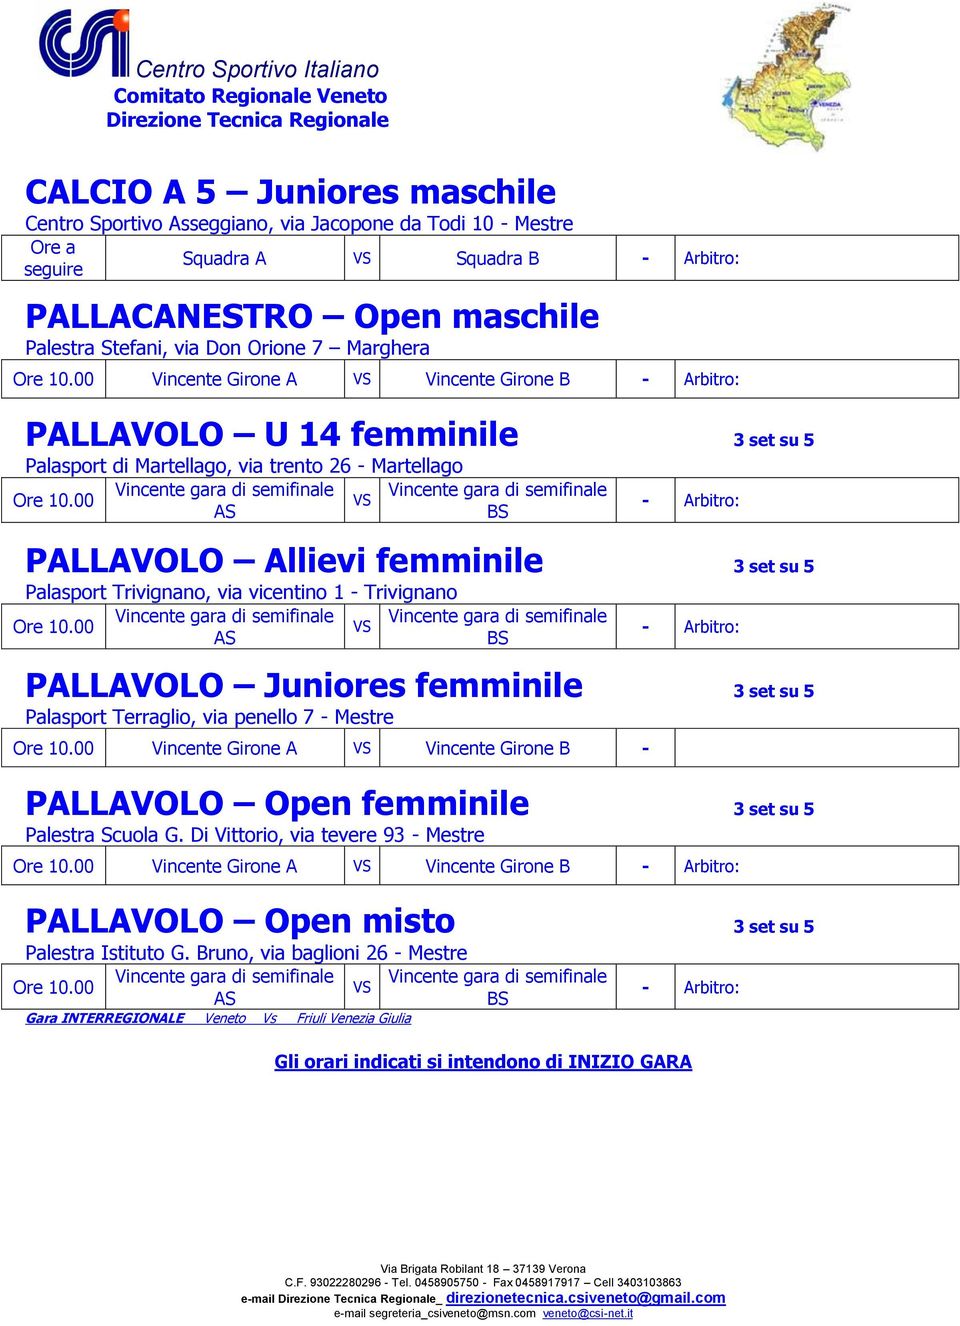 00 PALLAVOLO Allievi femminile 3 set su 5 Palasport Trivignano, via vicentino 1 - Trivignano Ore 10.00 PALLAVOLO Juniores femminile 3 set su 5 Palasport Terraglio, via penello 7 - Mestre Ore 10.